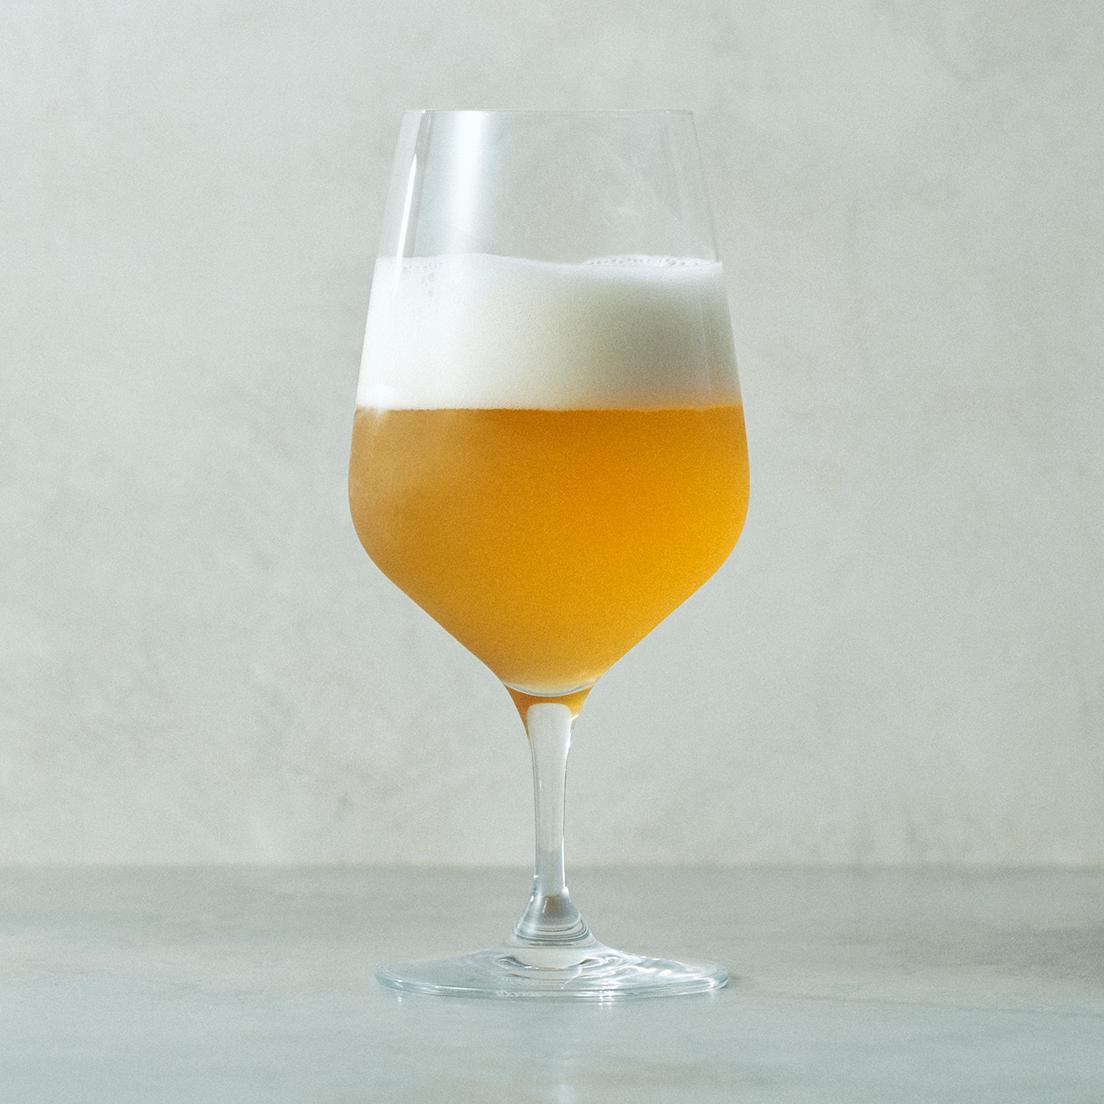 丹麦王室名牌<Holmguard>的啤酒杯。 它足够容纳 640 毫升，但一罐 350 毫升的啤酒（如图）是最好的平衡！ “CABERNET 啤酒杯”φ10 x H20.5 cm，6 件套 15,840 日元。 ● 信和店